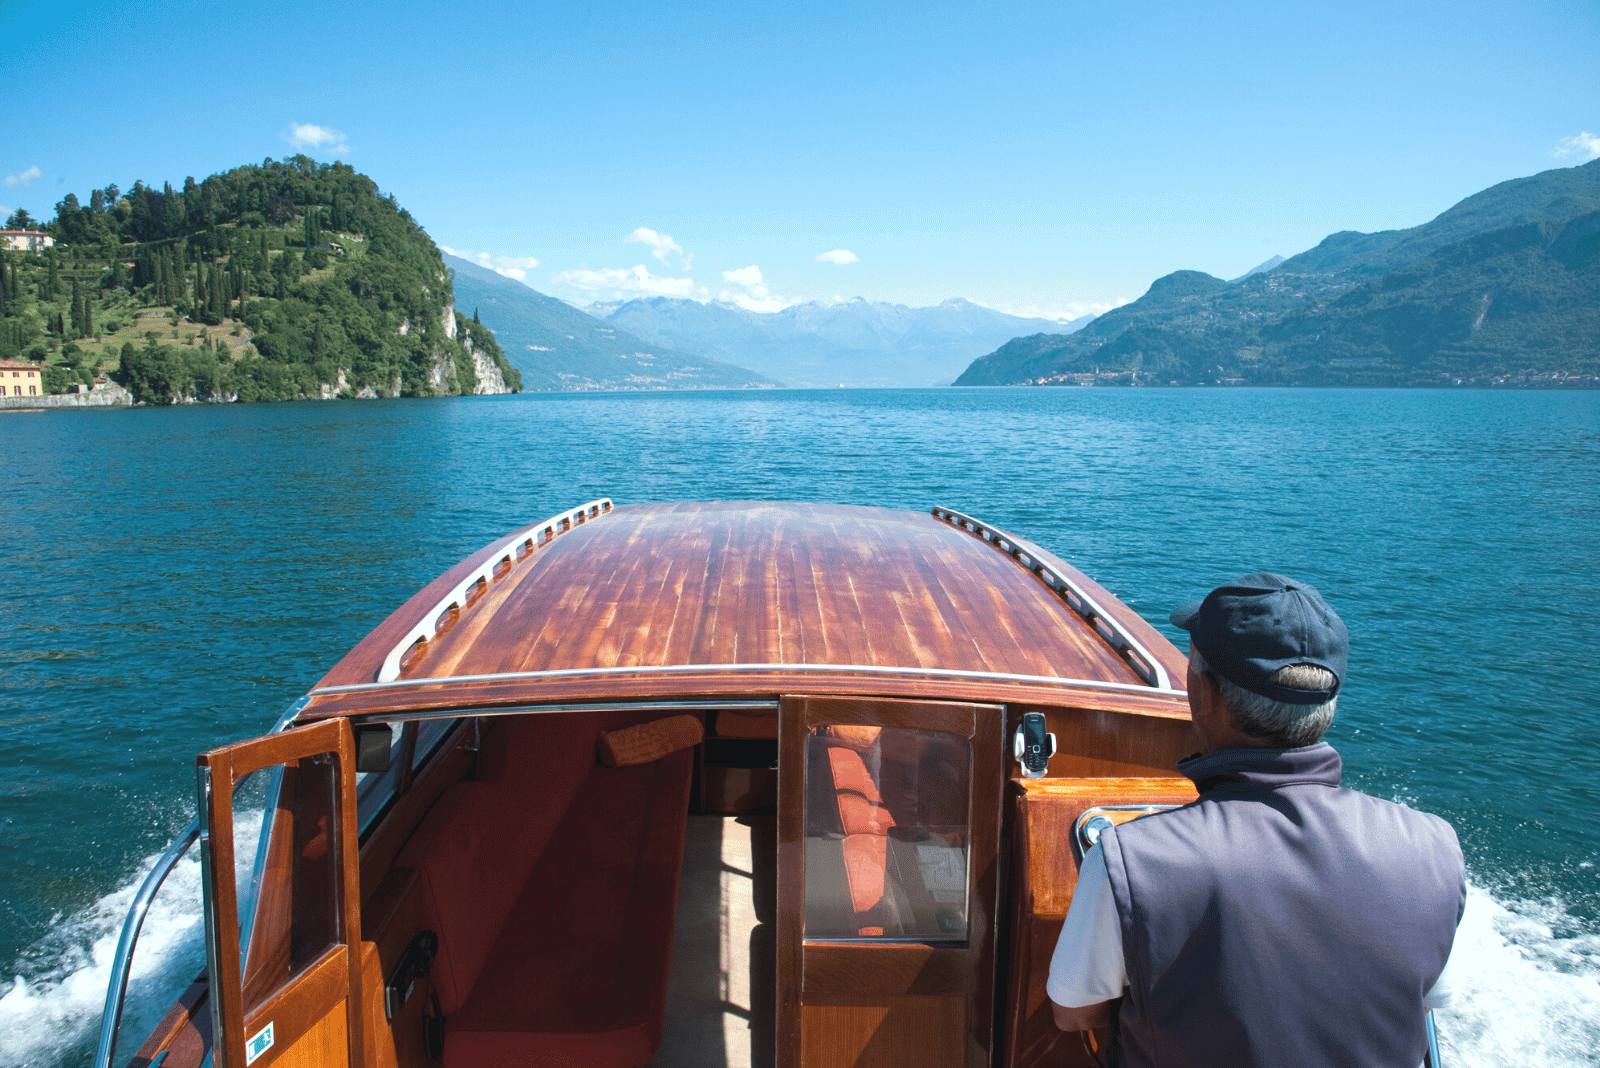 Lake Como by boat from Grand Hotel Tremezzo